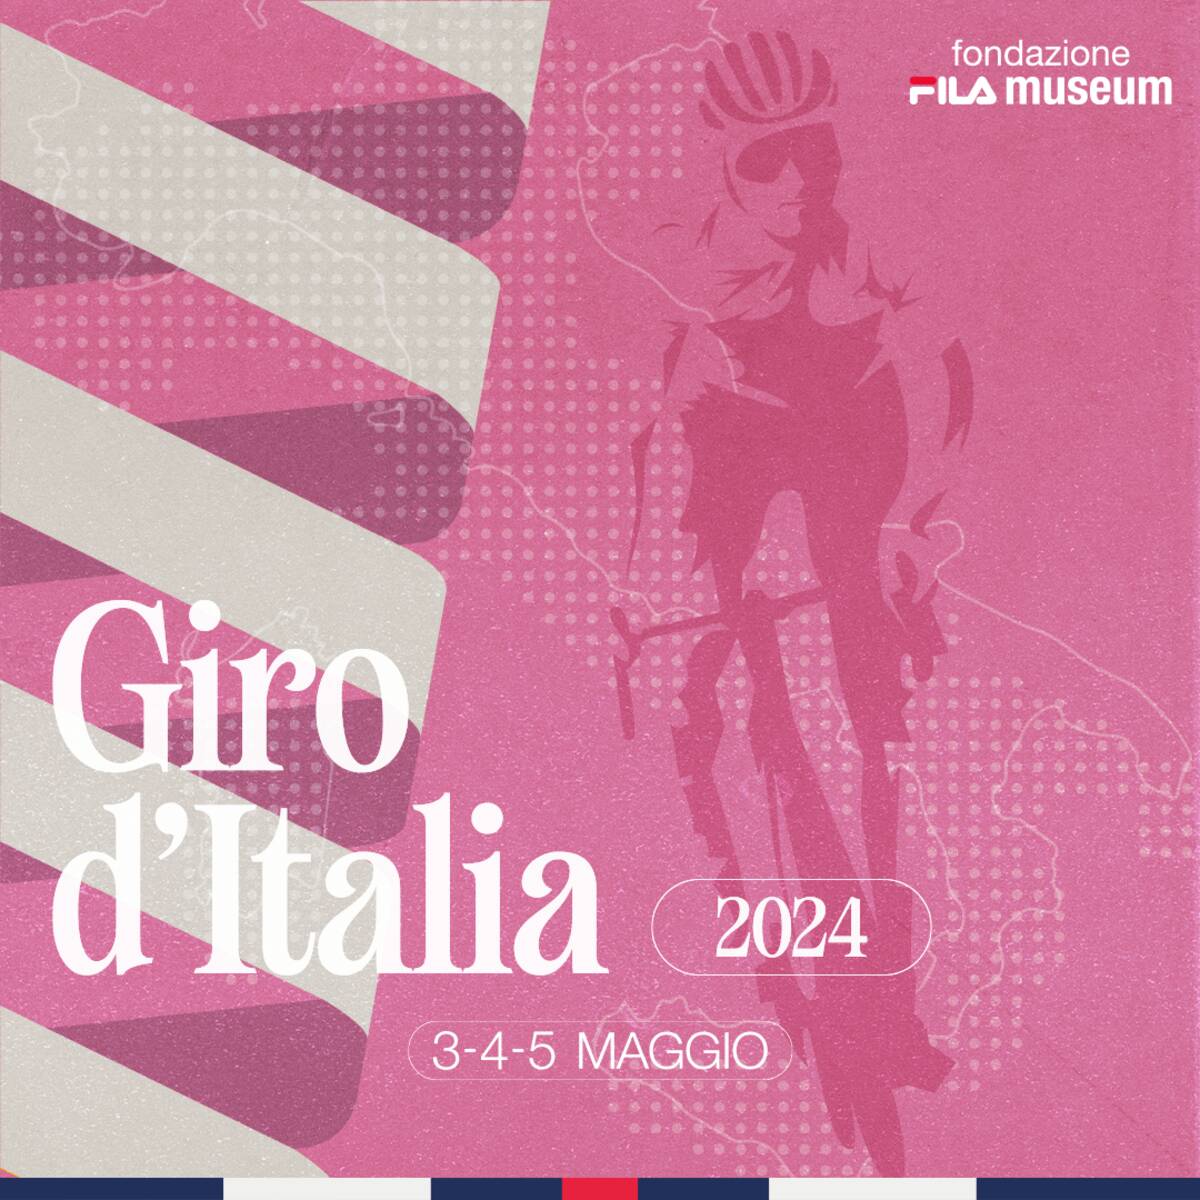 Evento Giro d'Italia ciclismo Fila Museum